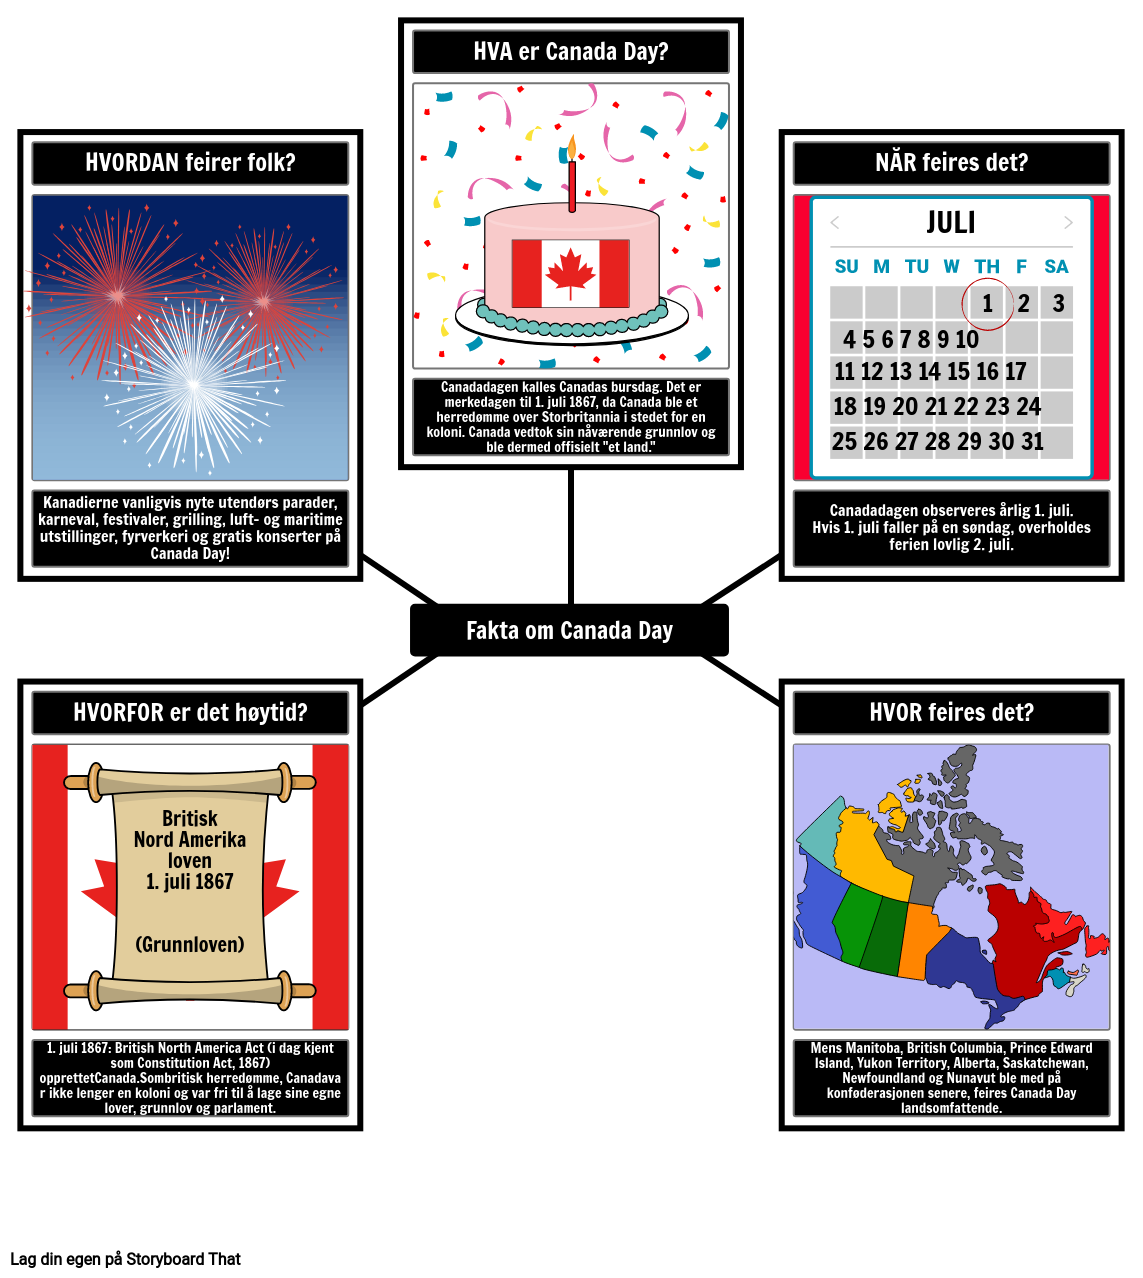 Fakta om Canada Day